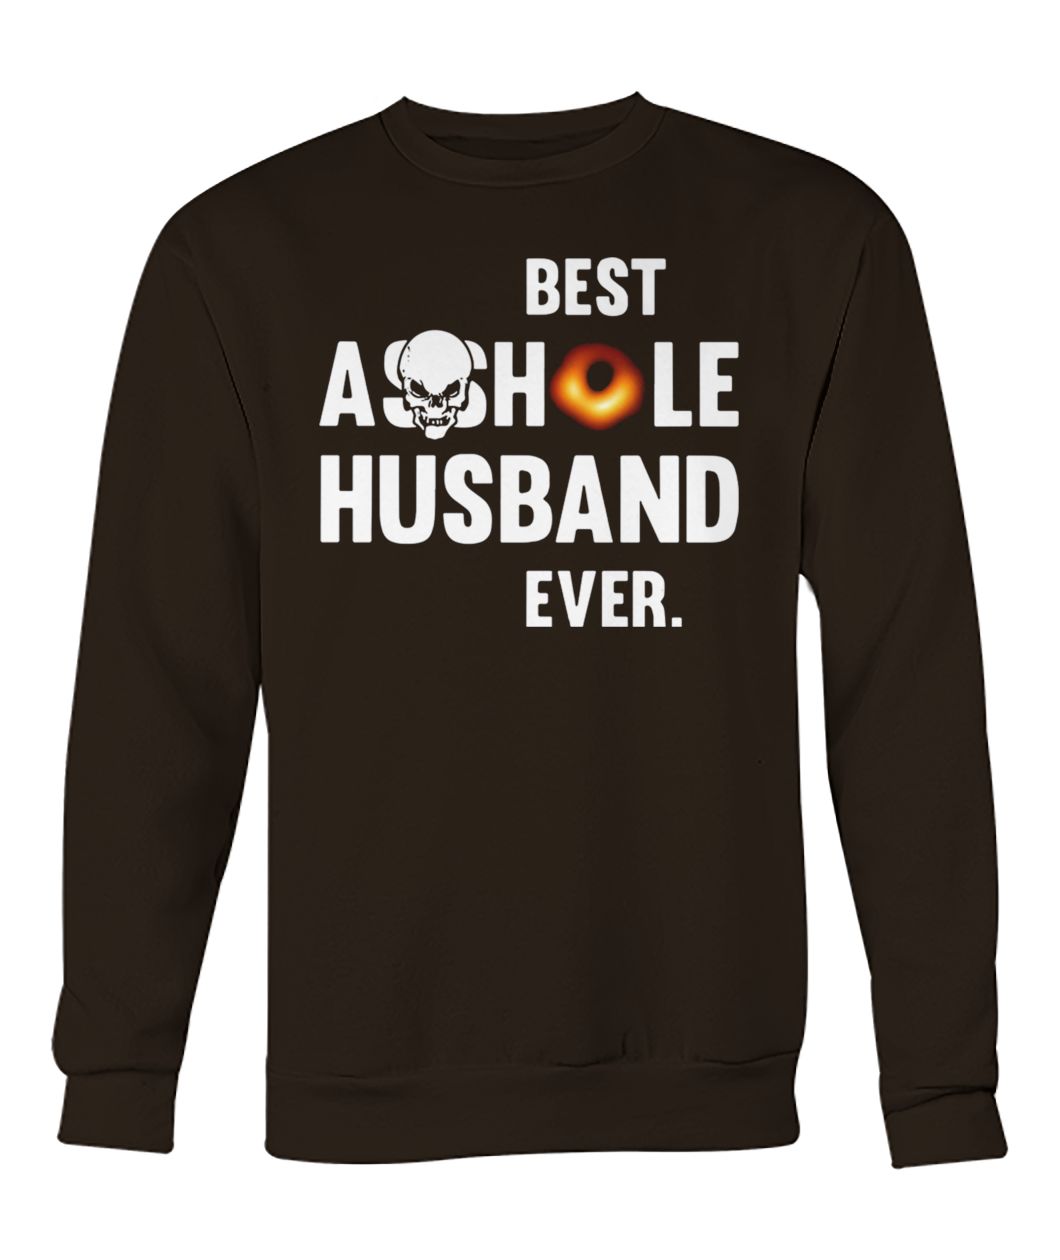 Black hole best asshole husband ever black hole 2019 crew neck sweatshirt